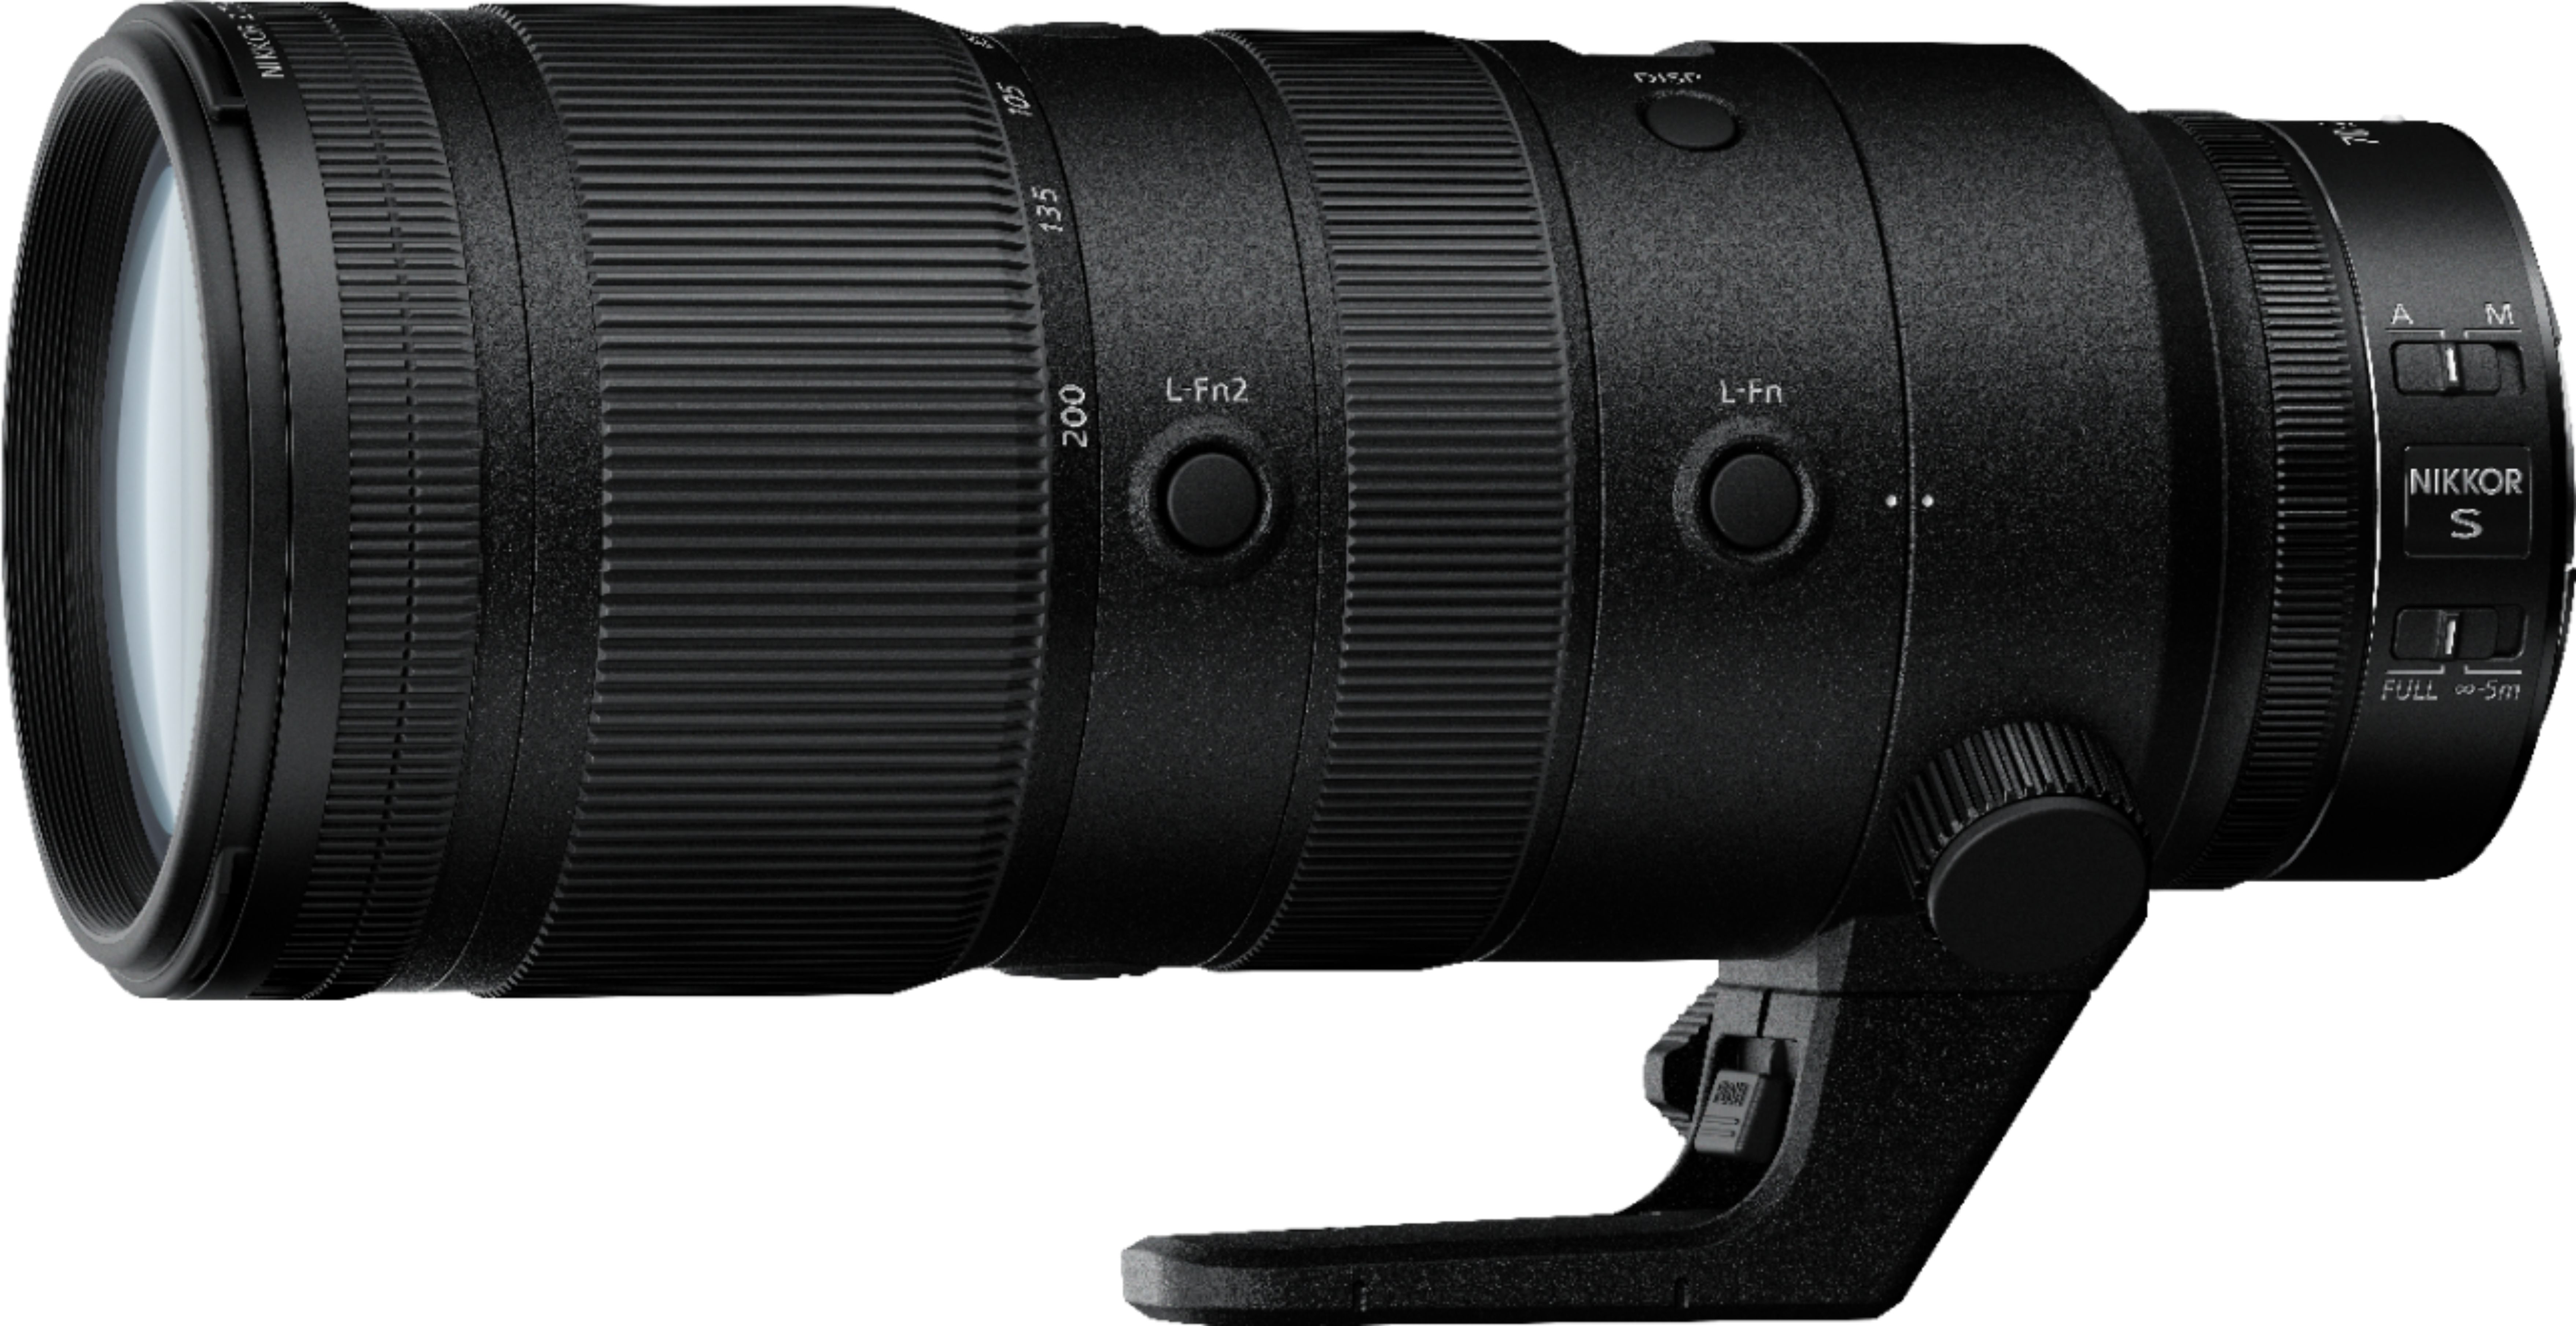 Angle View: NIKKOR Z 70-200mm f/2.8 VR S Optical Telephoto Zoom Lens for Nikon Z Cameras - Black